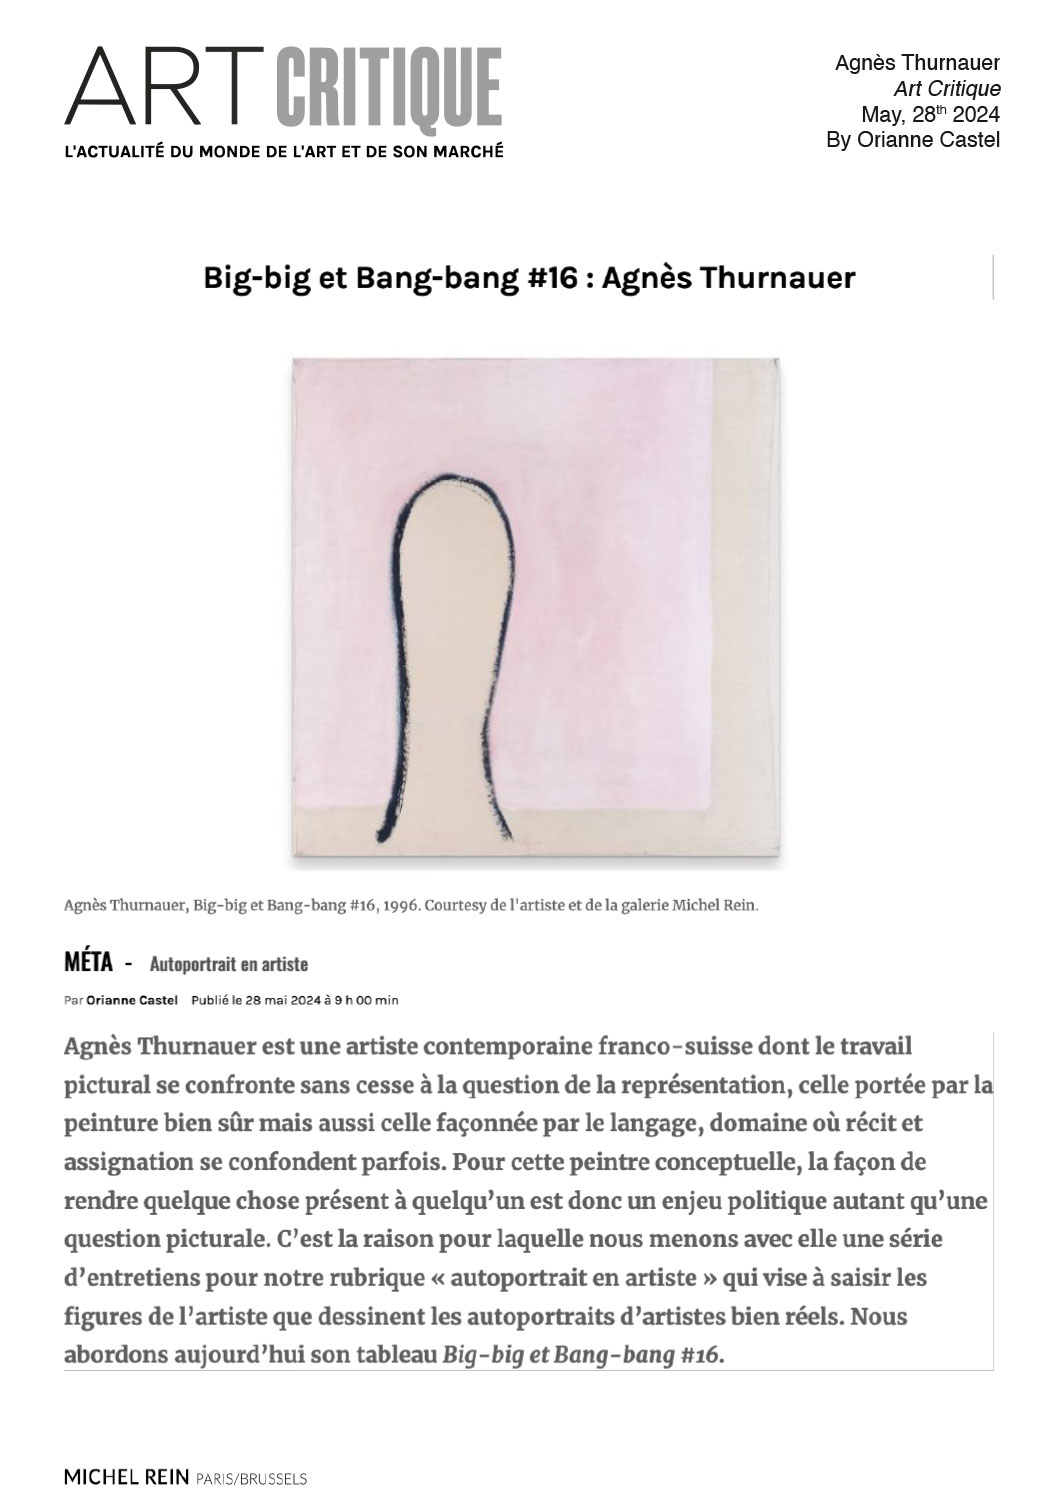 Big-big et Bang-bang #16 : Agns Thurnauer - Art Critique